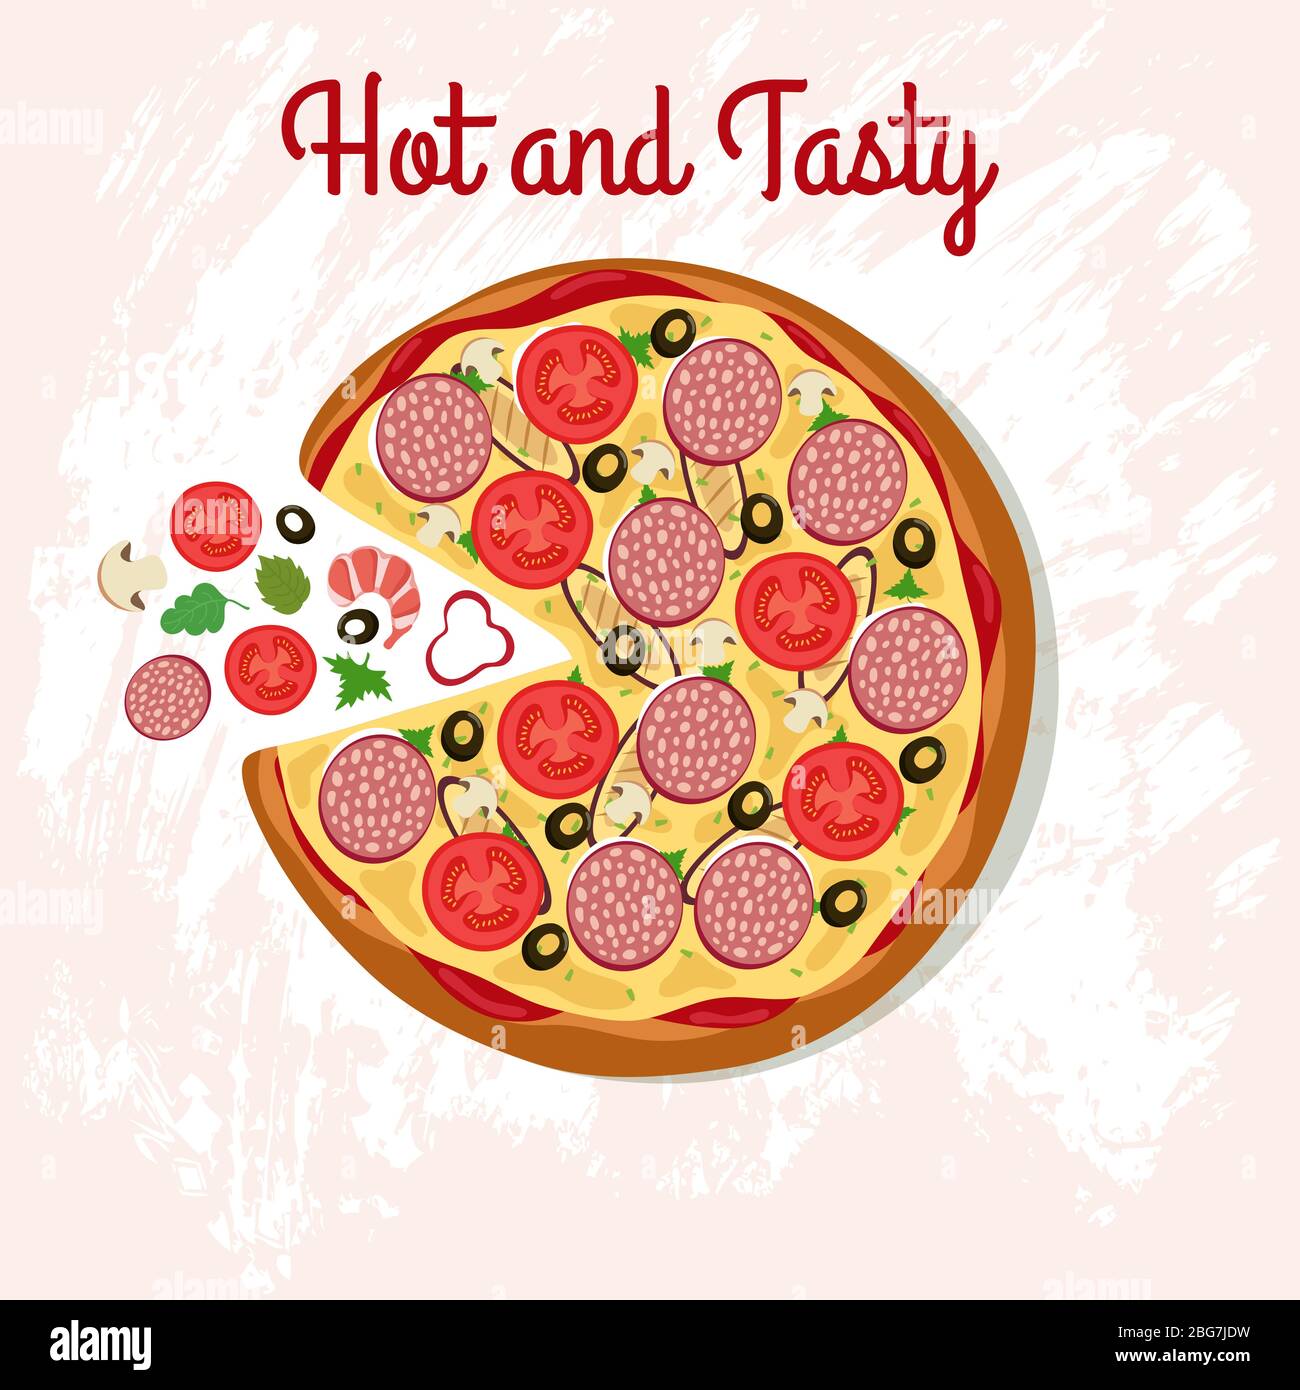 Deliciosa pizza en la mesa con ingredientes de pizza. Póster vector de cocina italiana. Ilustración de comida rápida caliente y sabrosa Ilustración del Vector